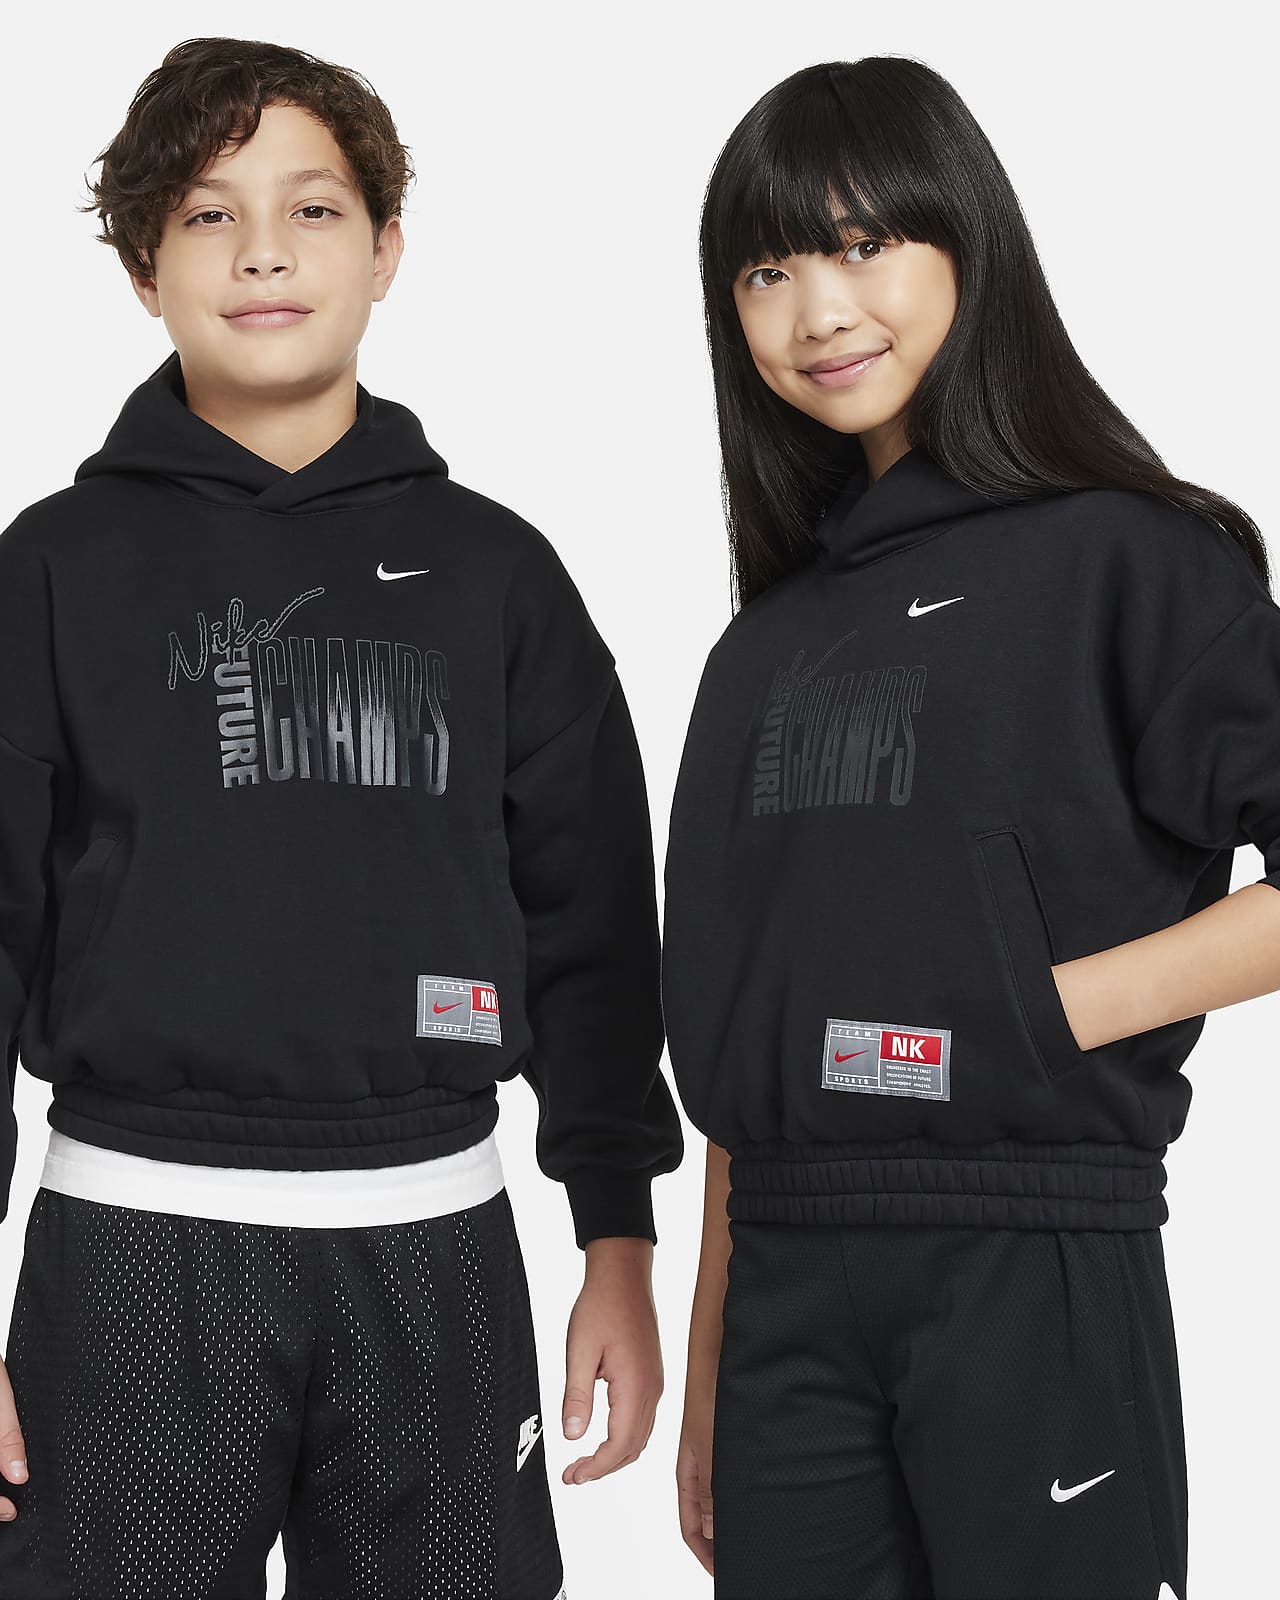 Φλις φούτερ με κουκούλα Nike Culture of Basketball για μεγάλα παιδιά